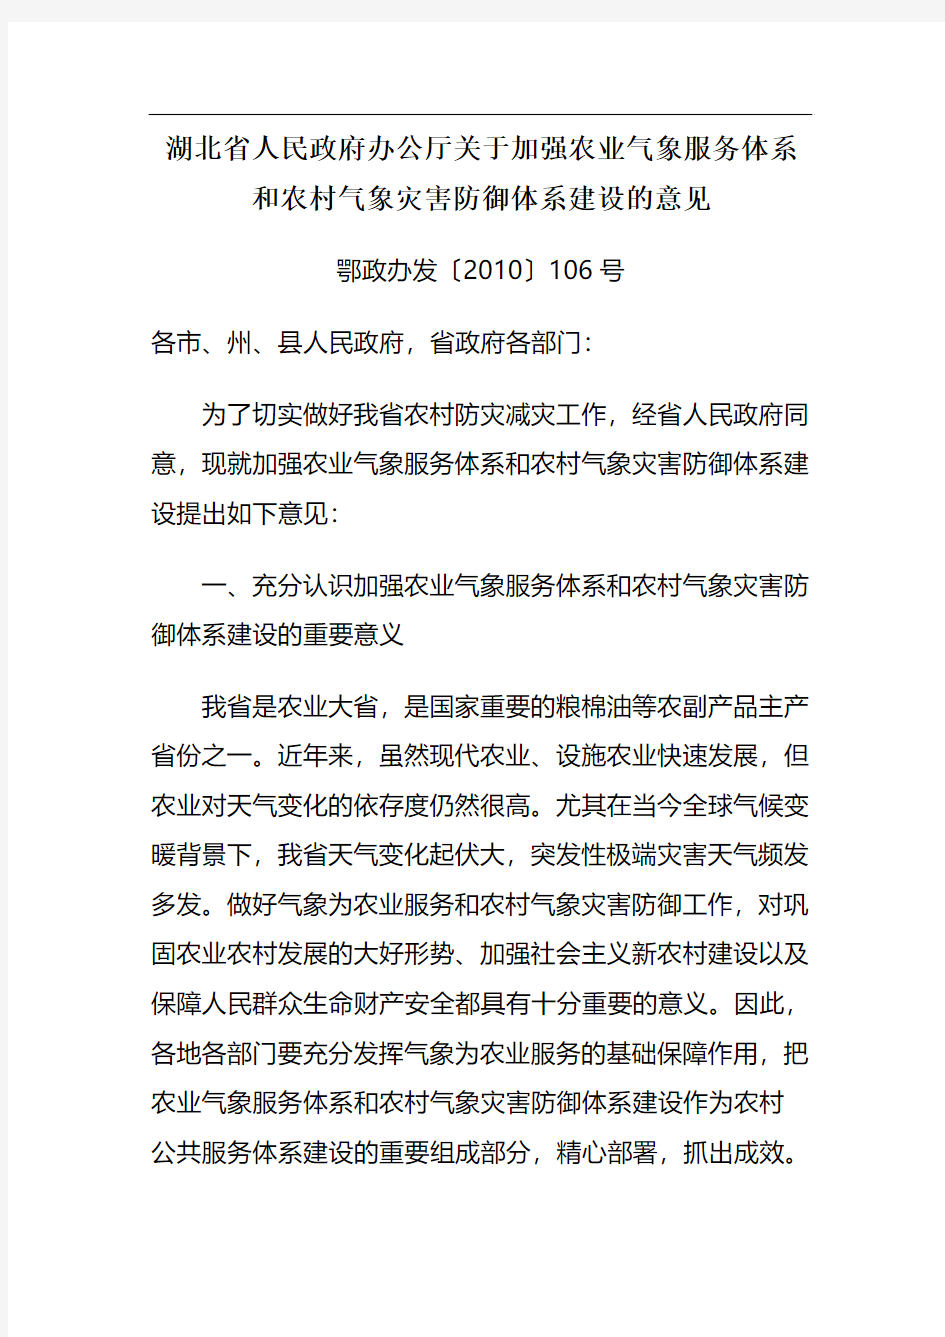 湖北省人民政府办公厅关于加强农业气象服务体系和农村气象灾害防御体系建设的意见(106号文件)